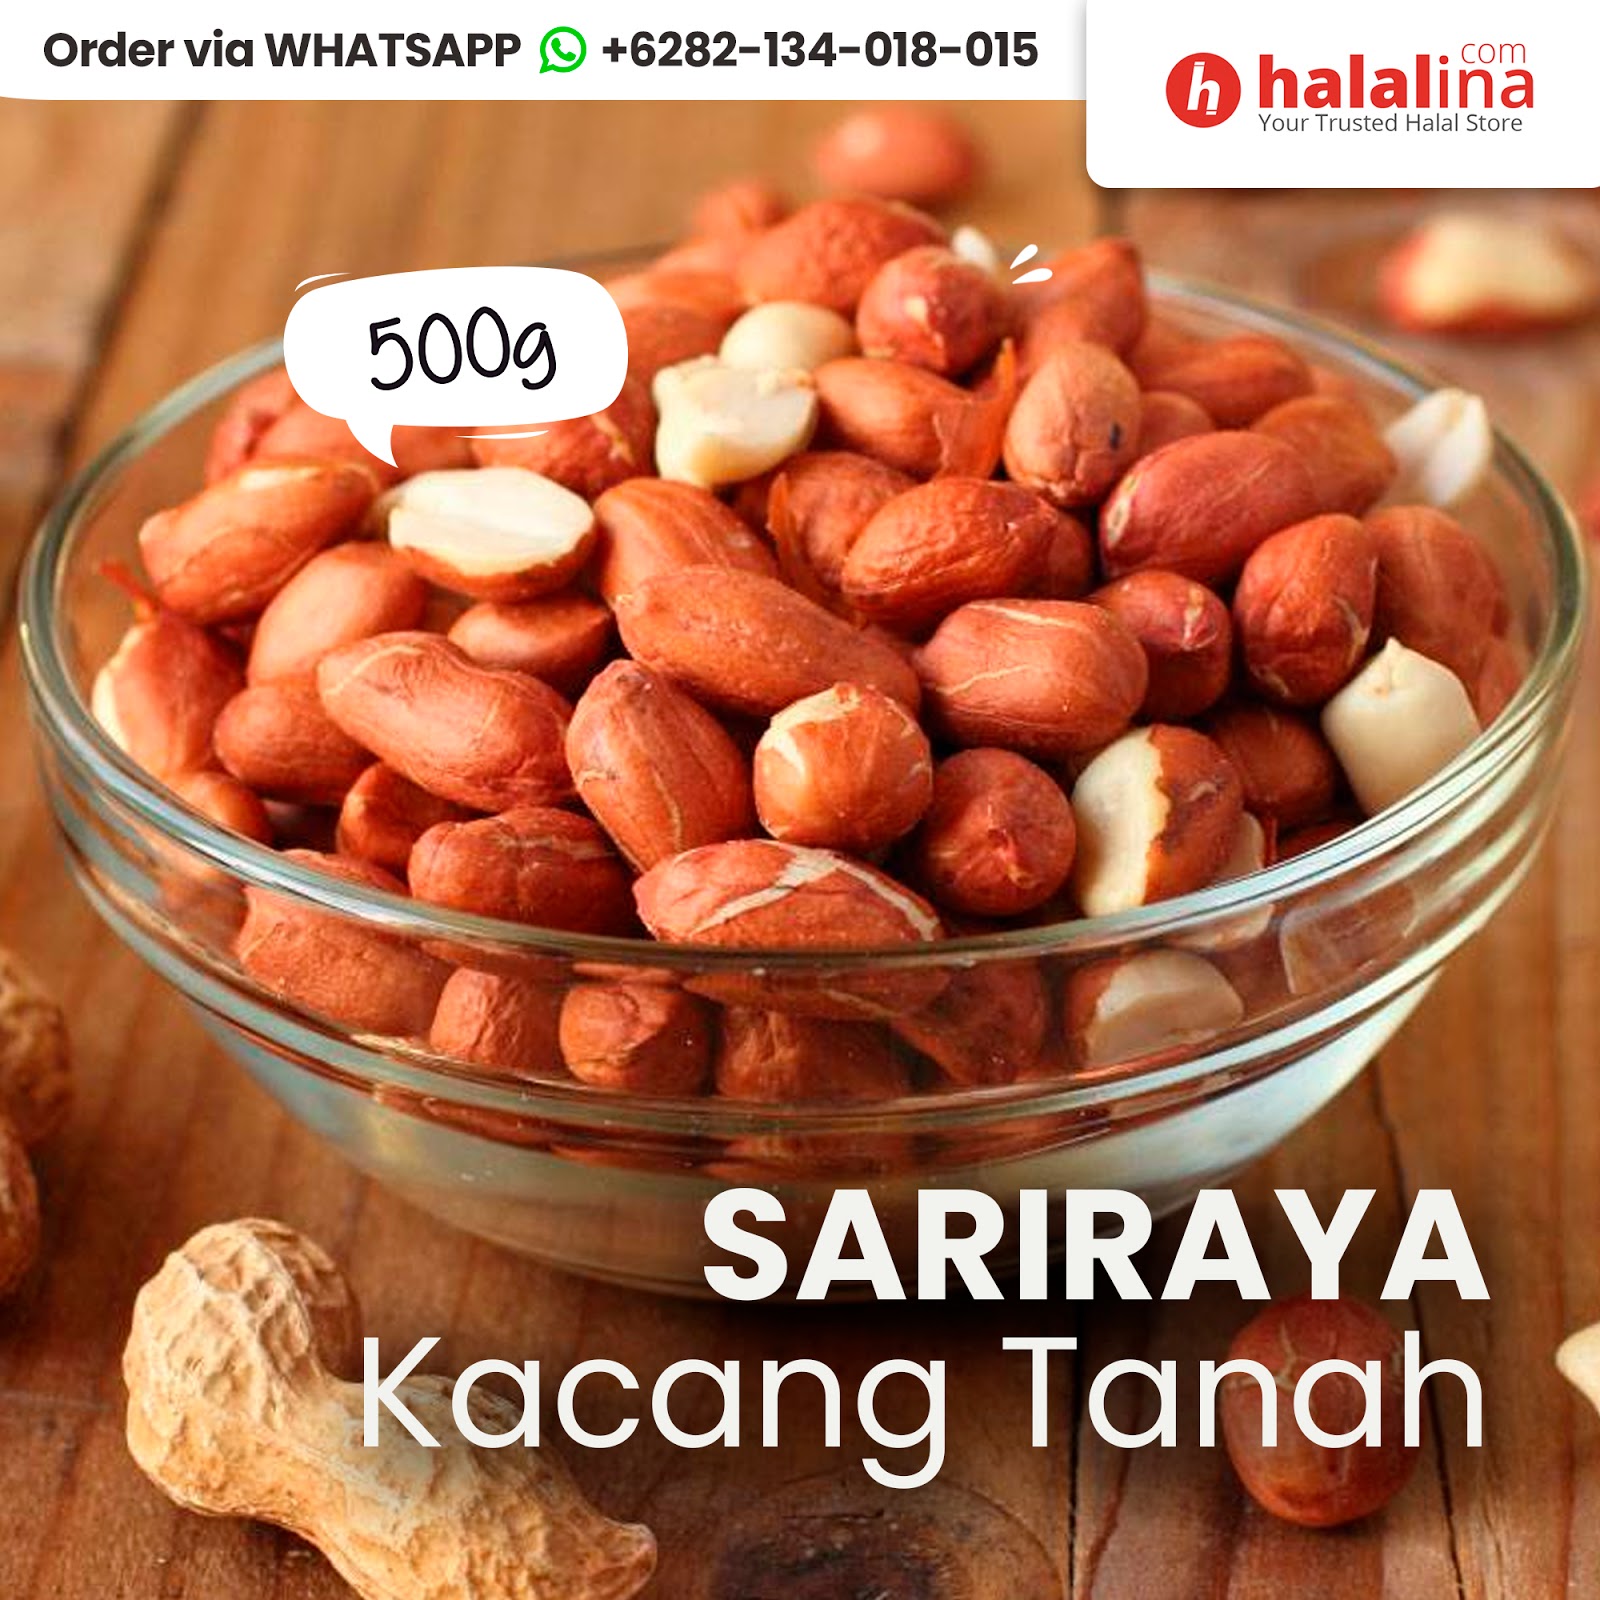 Halal Indonesian Food in Japan: HALALINA Phone: +62 821-3401-8015 Halal